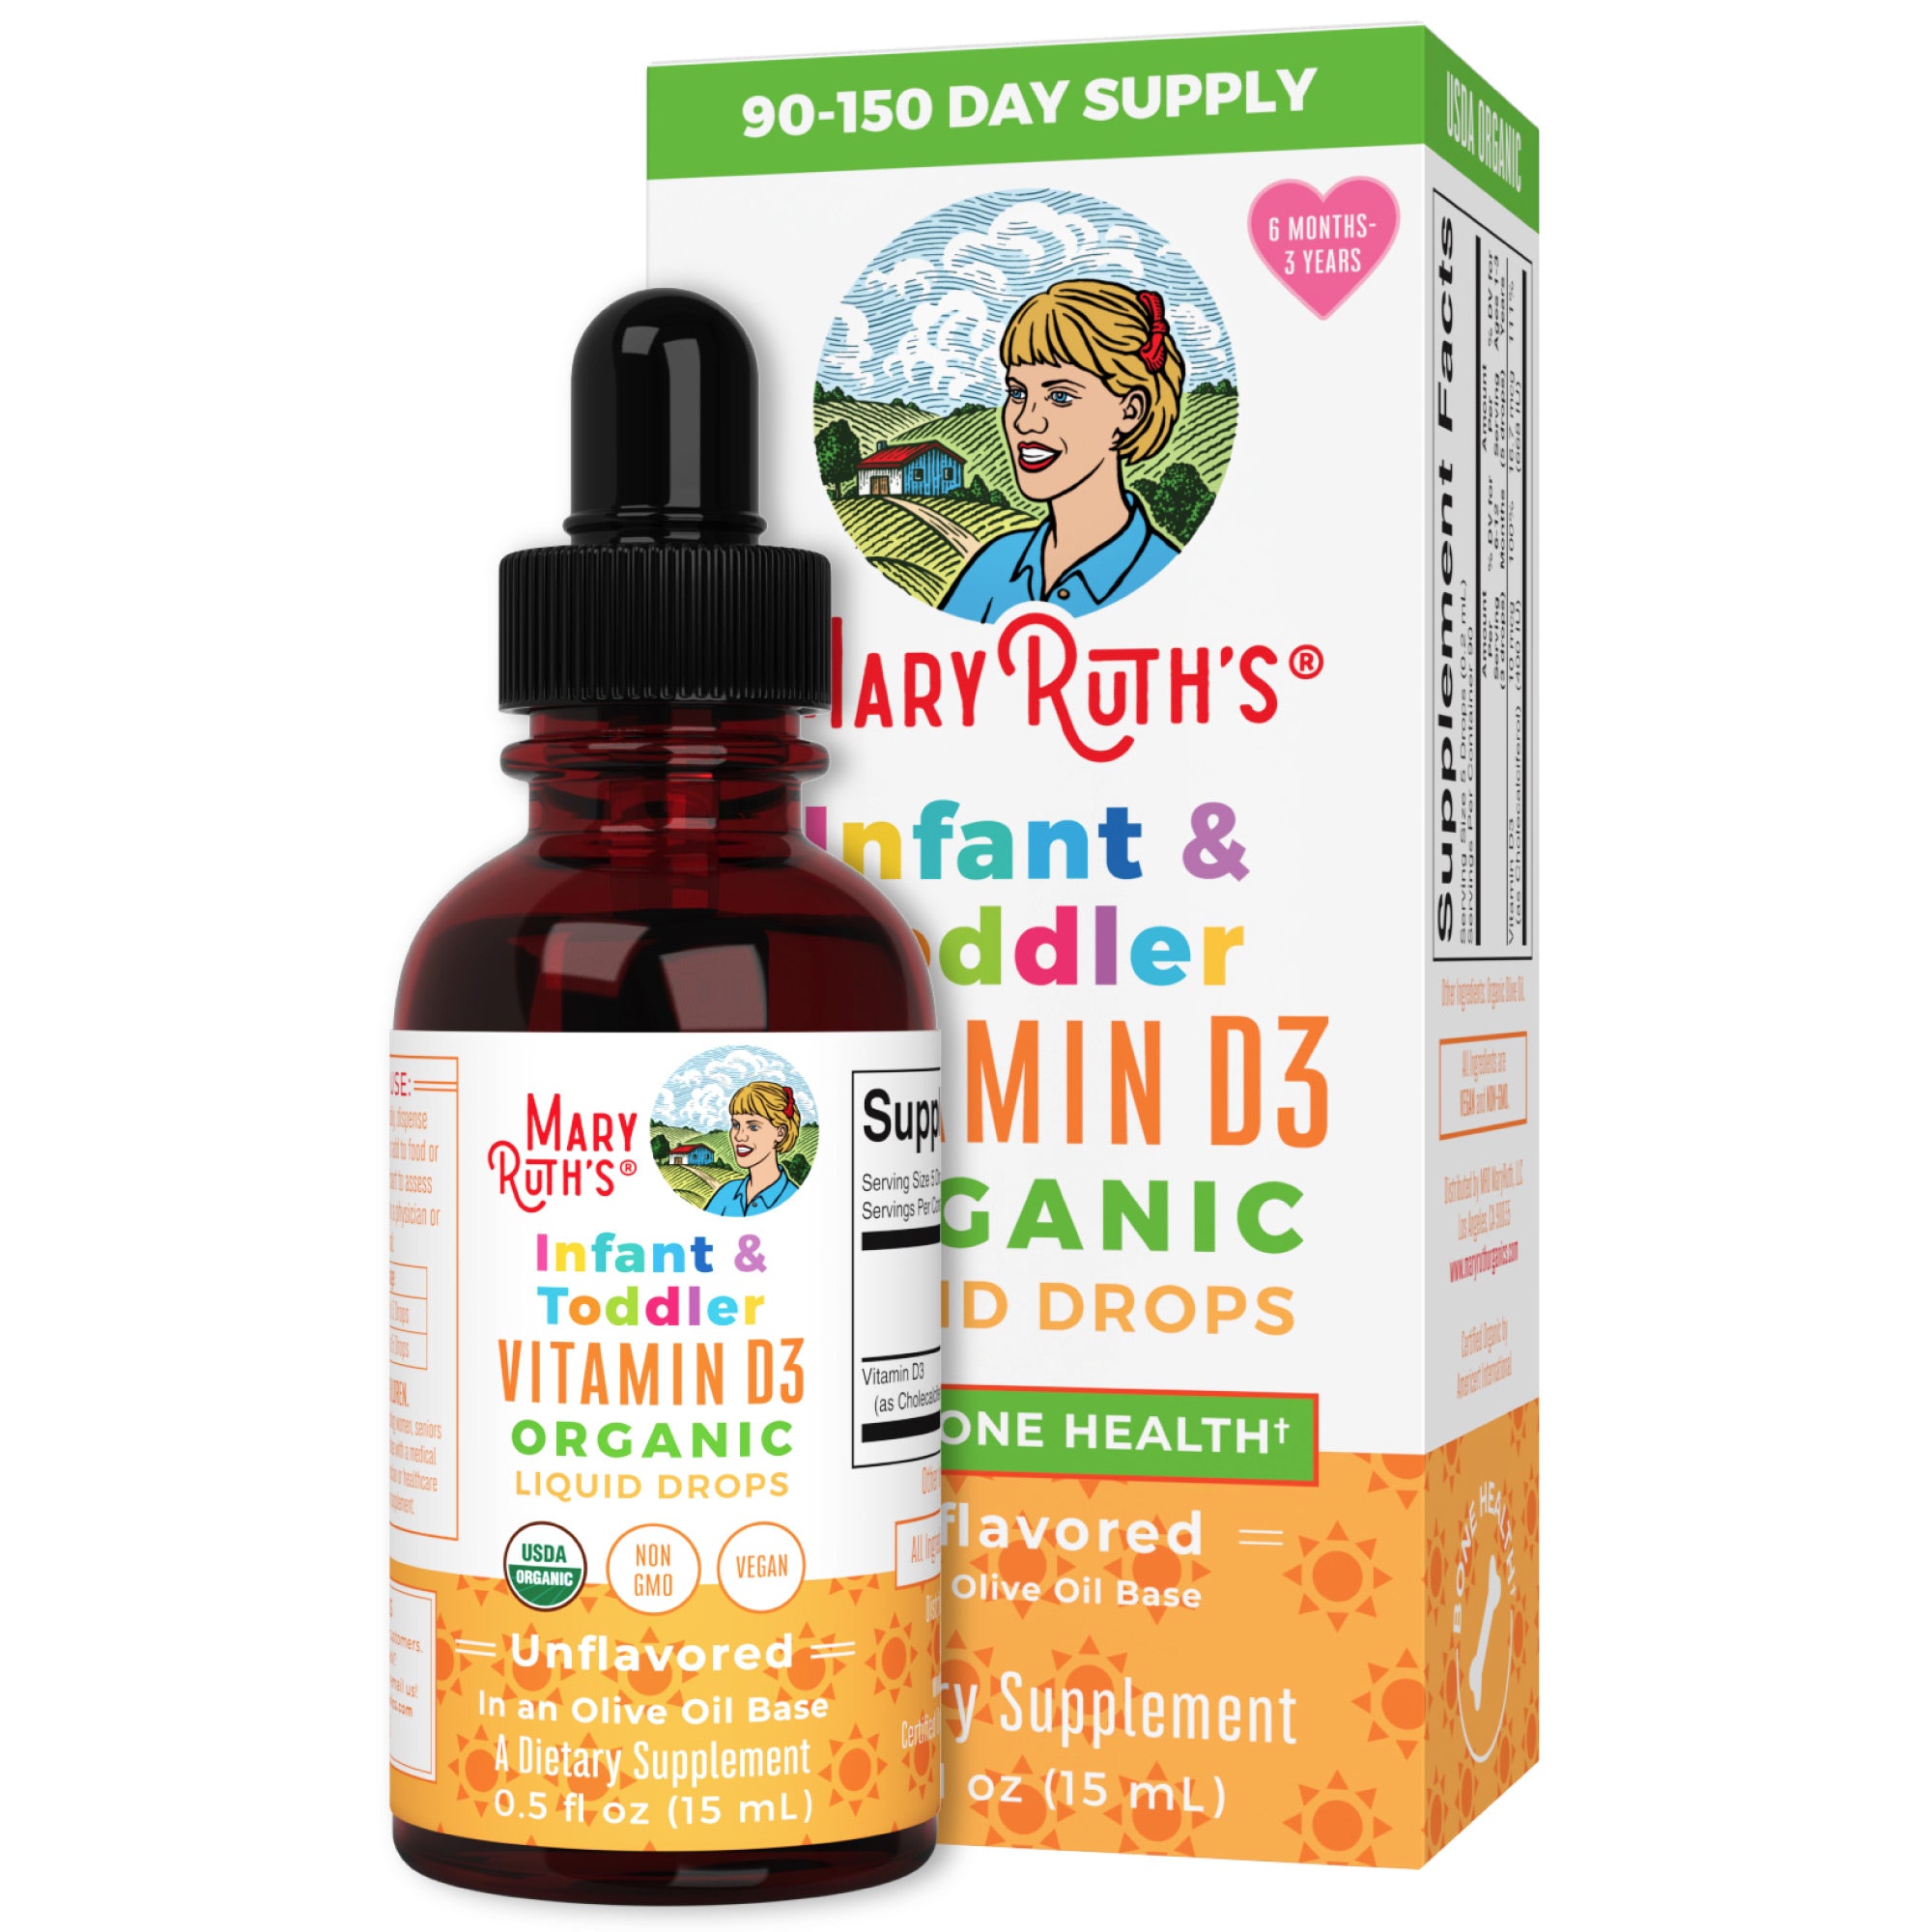 Infant & Toddler Vitamin D3 Organic Liquid Drops